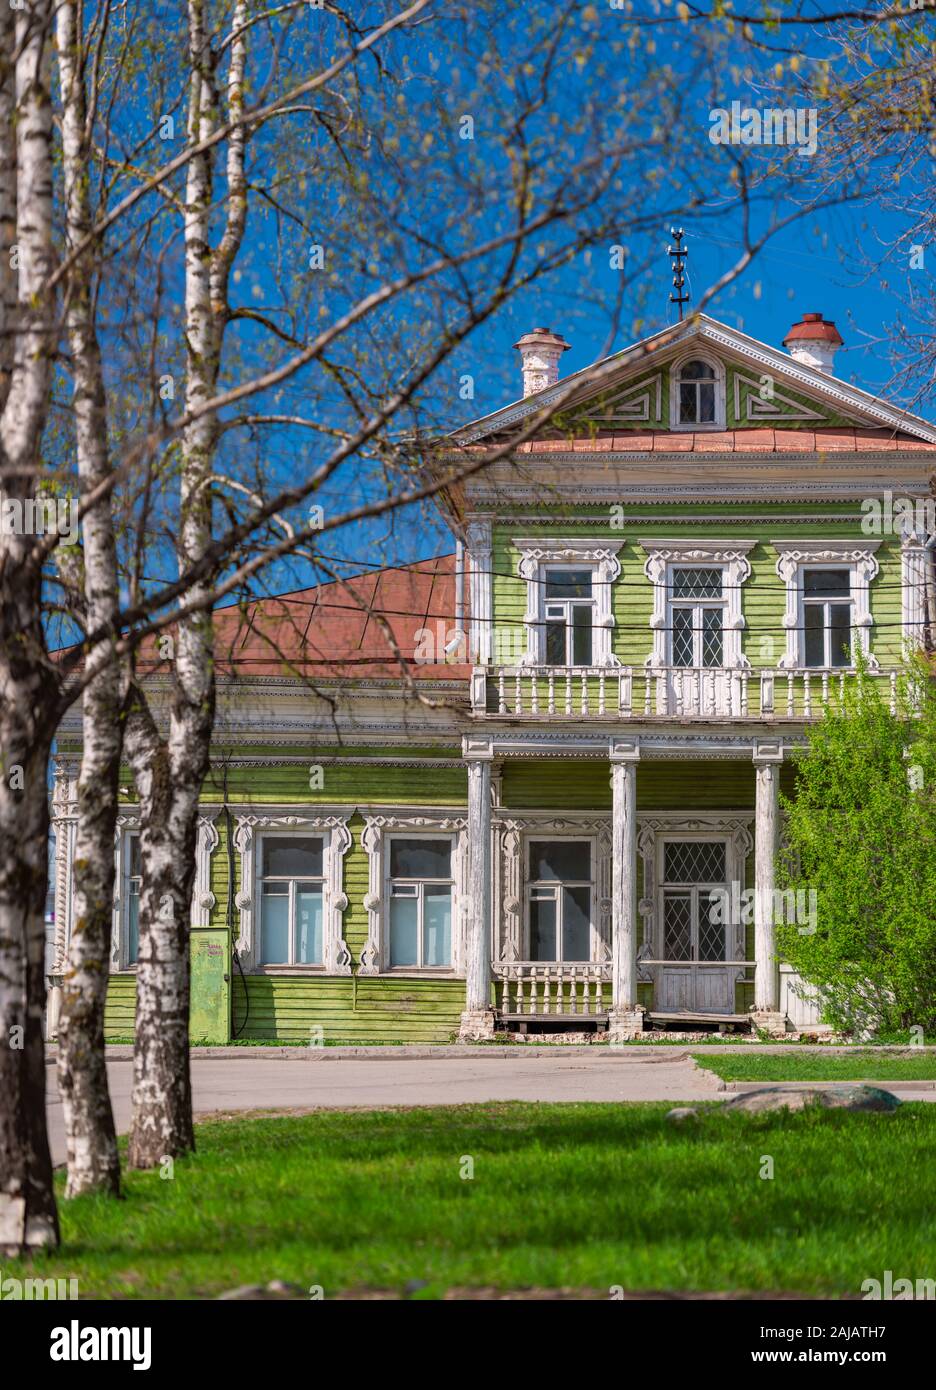 Vieille maison en bois vert à Vologda Russie. L'architecture traditionnelle et un jour ensoleillé Banque D'Images